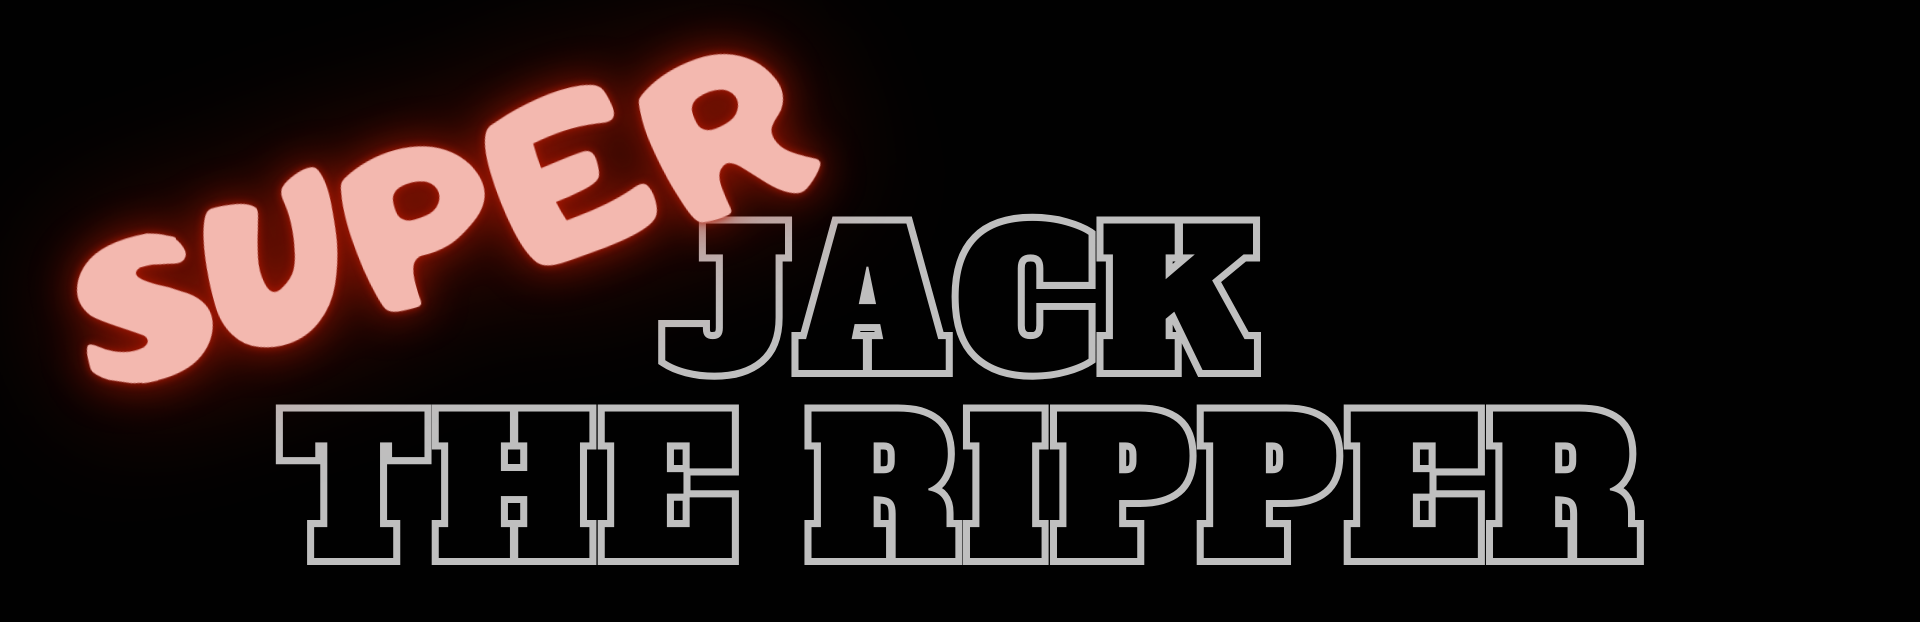 SUPER JACK THE RIPPER